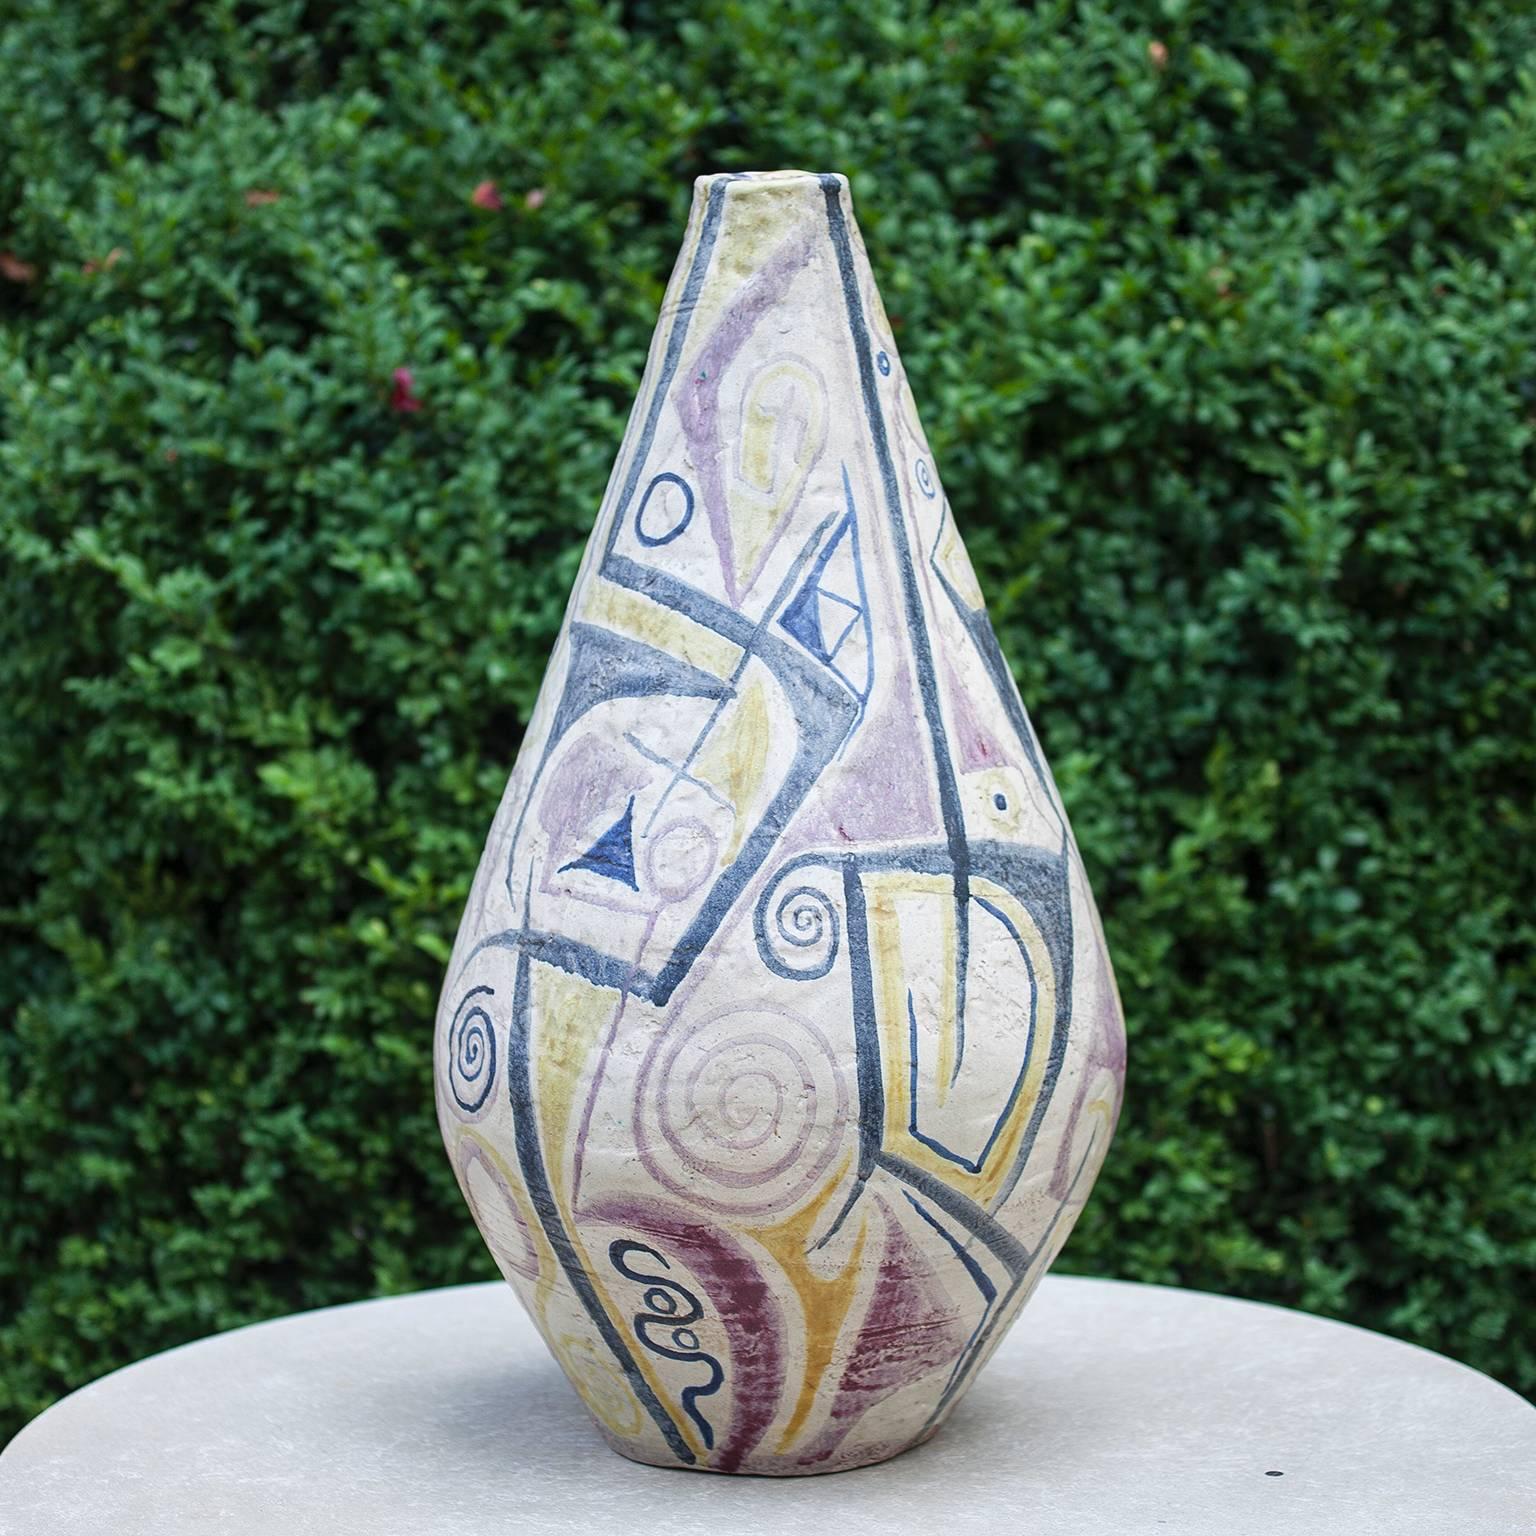 Sehr große Vase aus deutscher Keramik von Roman Elsold, Deutschland, 1958.
Roman Elsold war Ende der 1950er Jahre Student an der Kunstakademie in München.
Einzelstück des Künstlers für eine Ausstellung der Akademie der Bildenden Künste München.